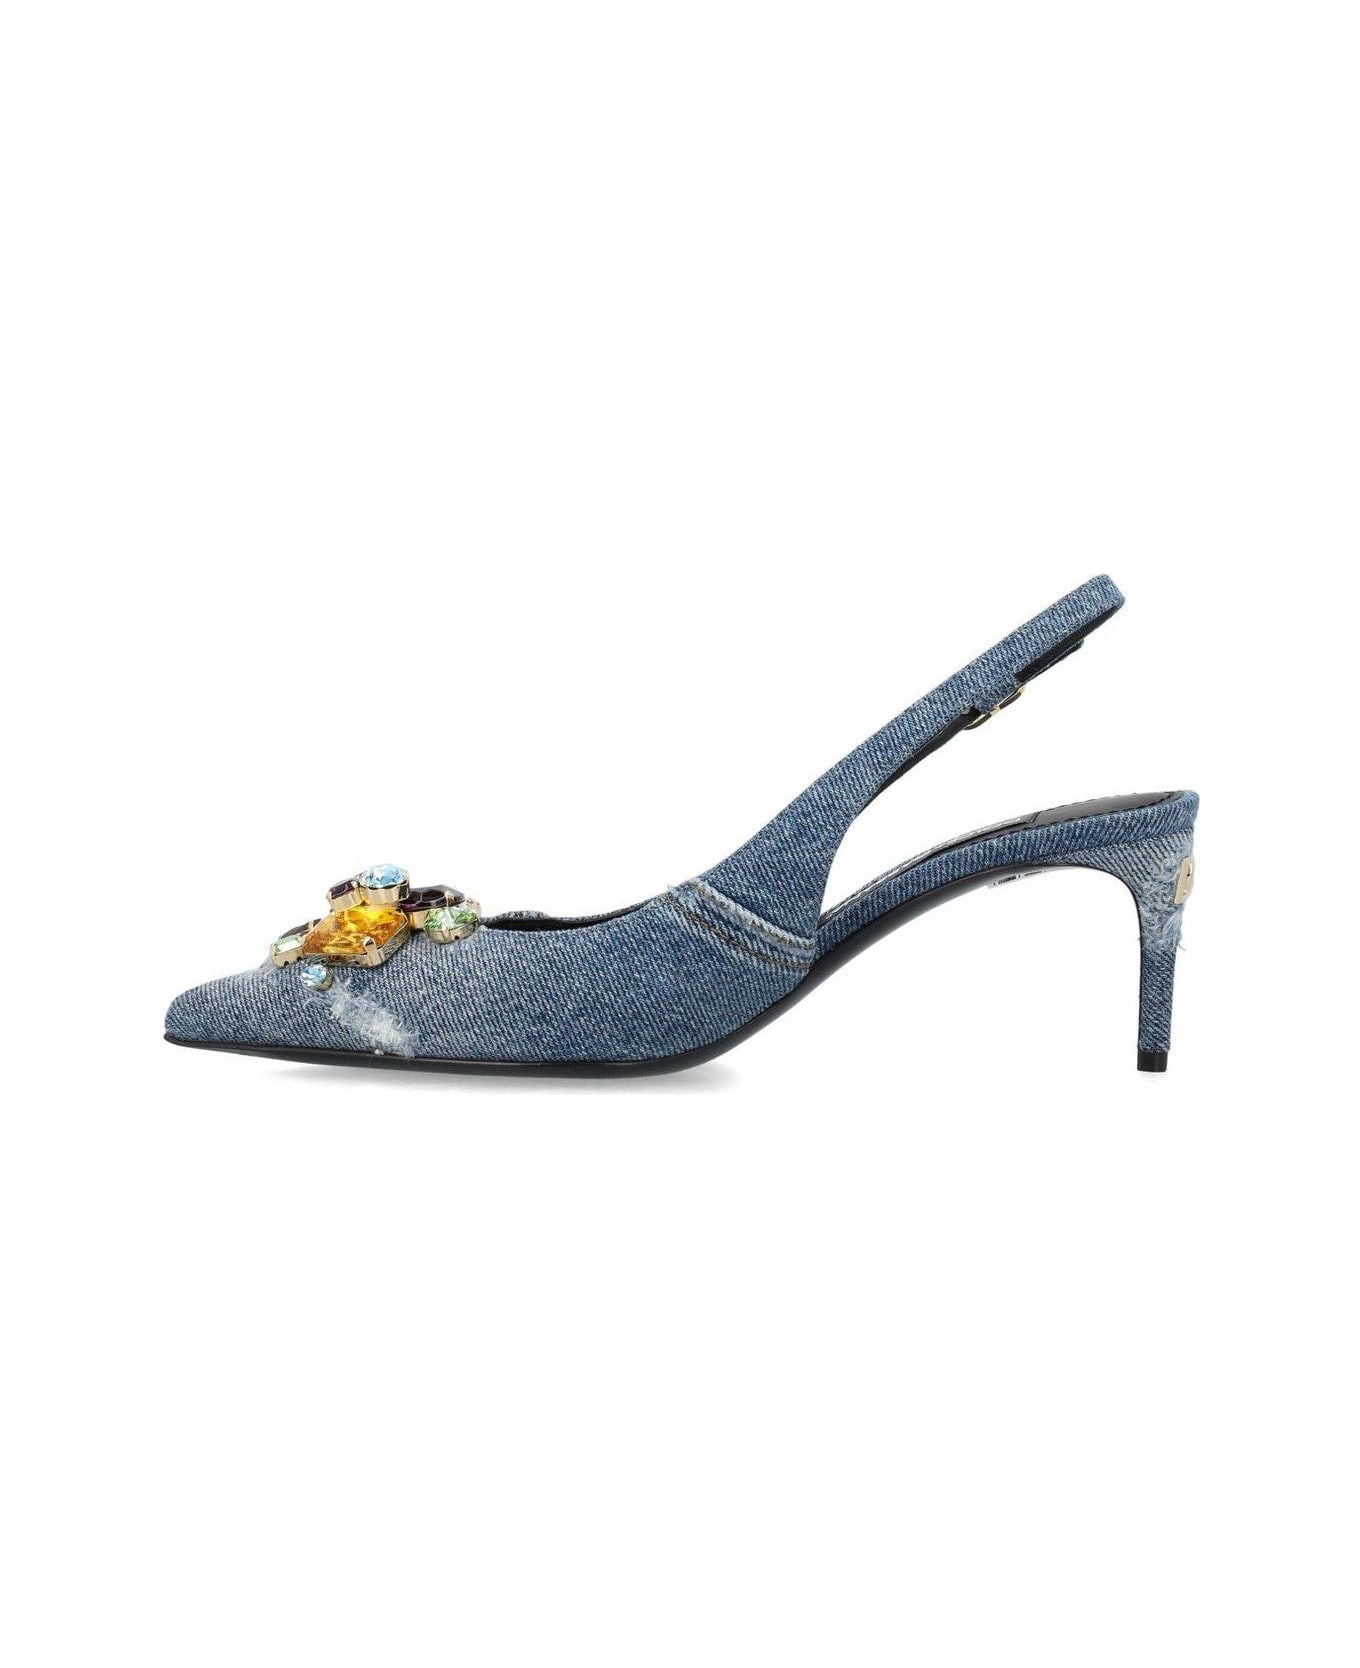 Dolce & Gabbana Crystal-embellished Pointed-toe Pumps - BLUE